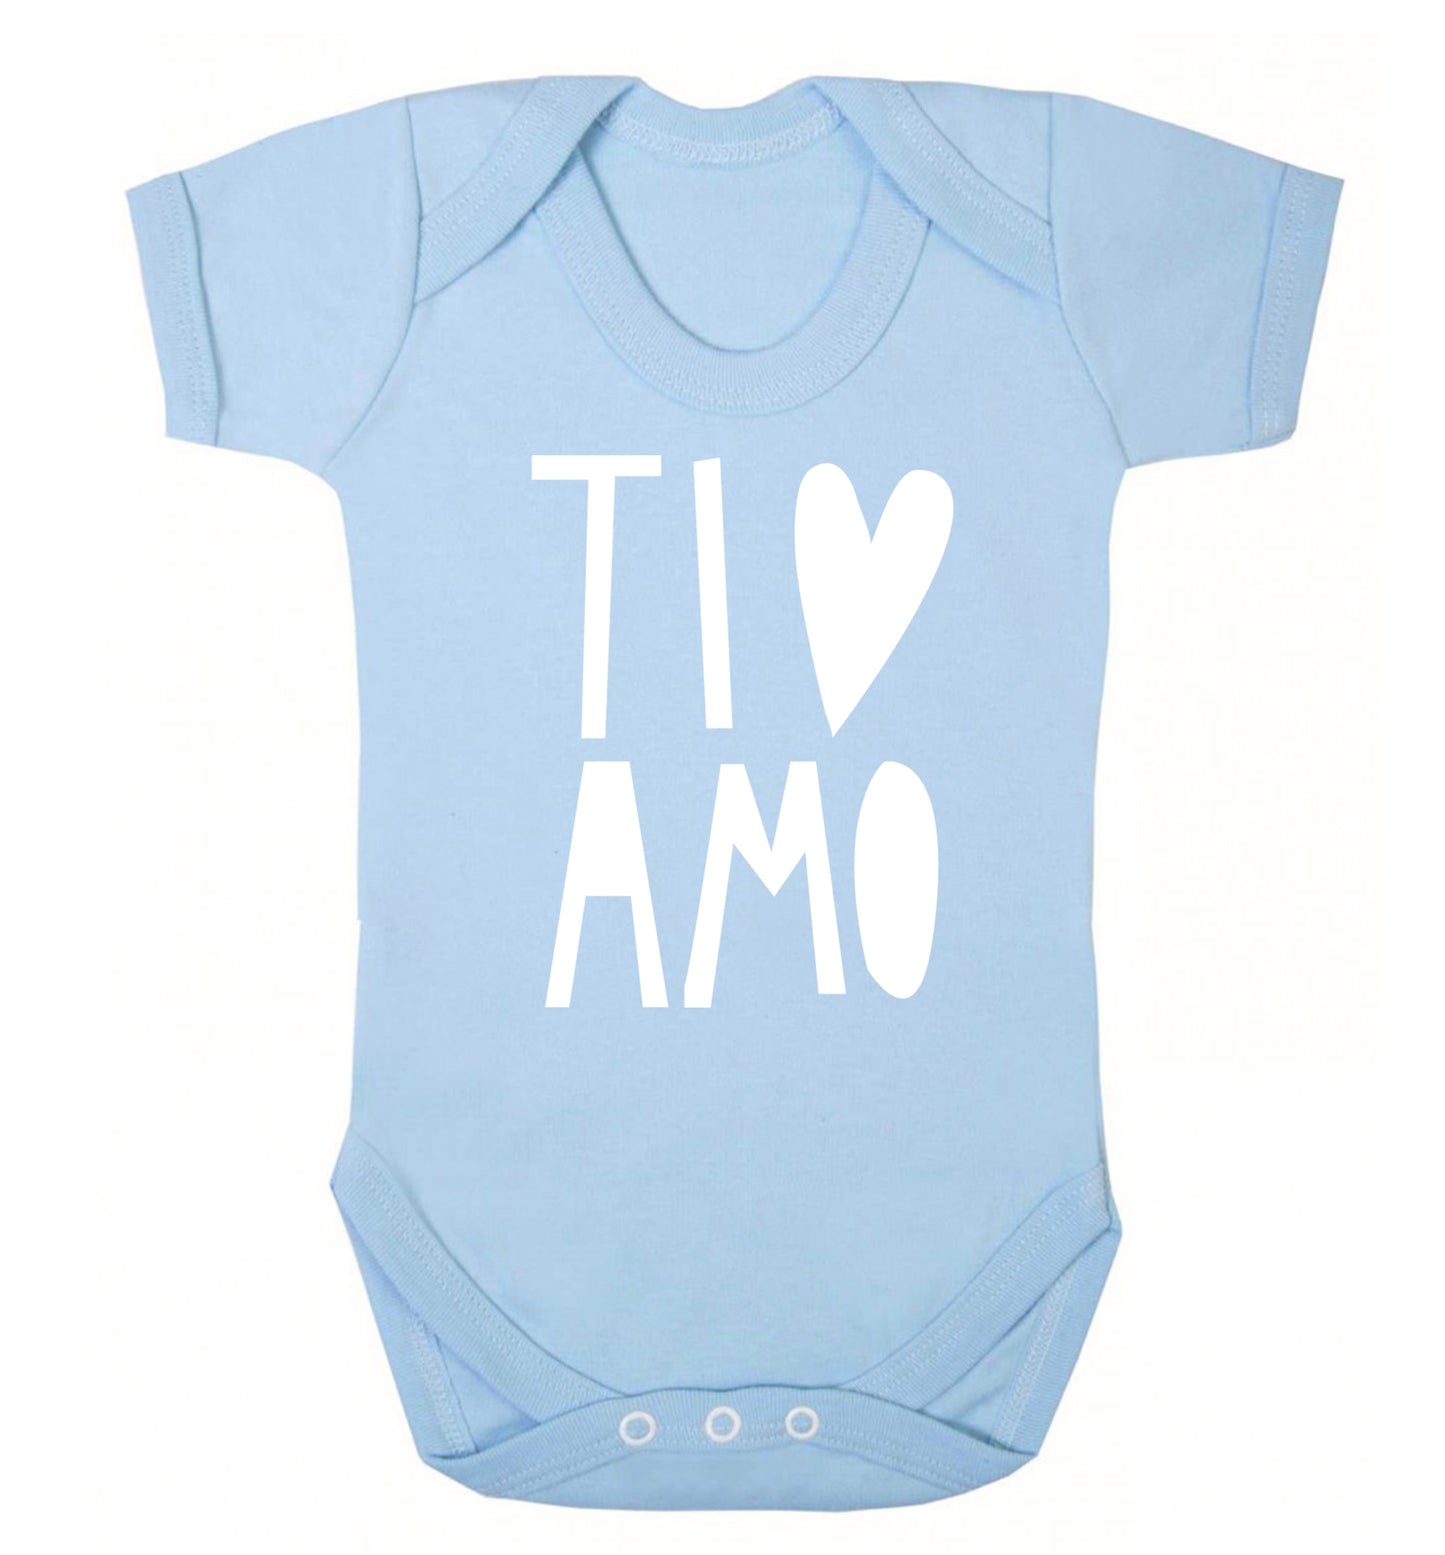 Ti amo - I love you Baby Vest pale blue 18-24 months